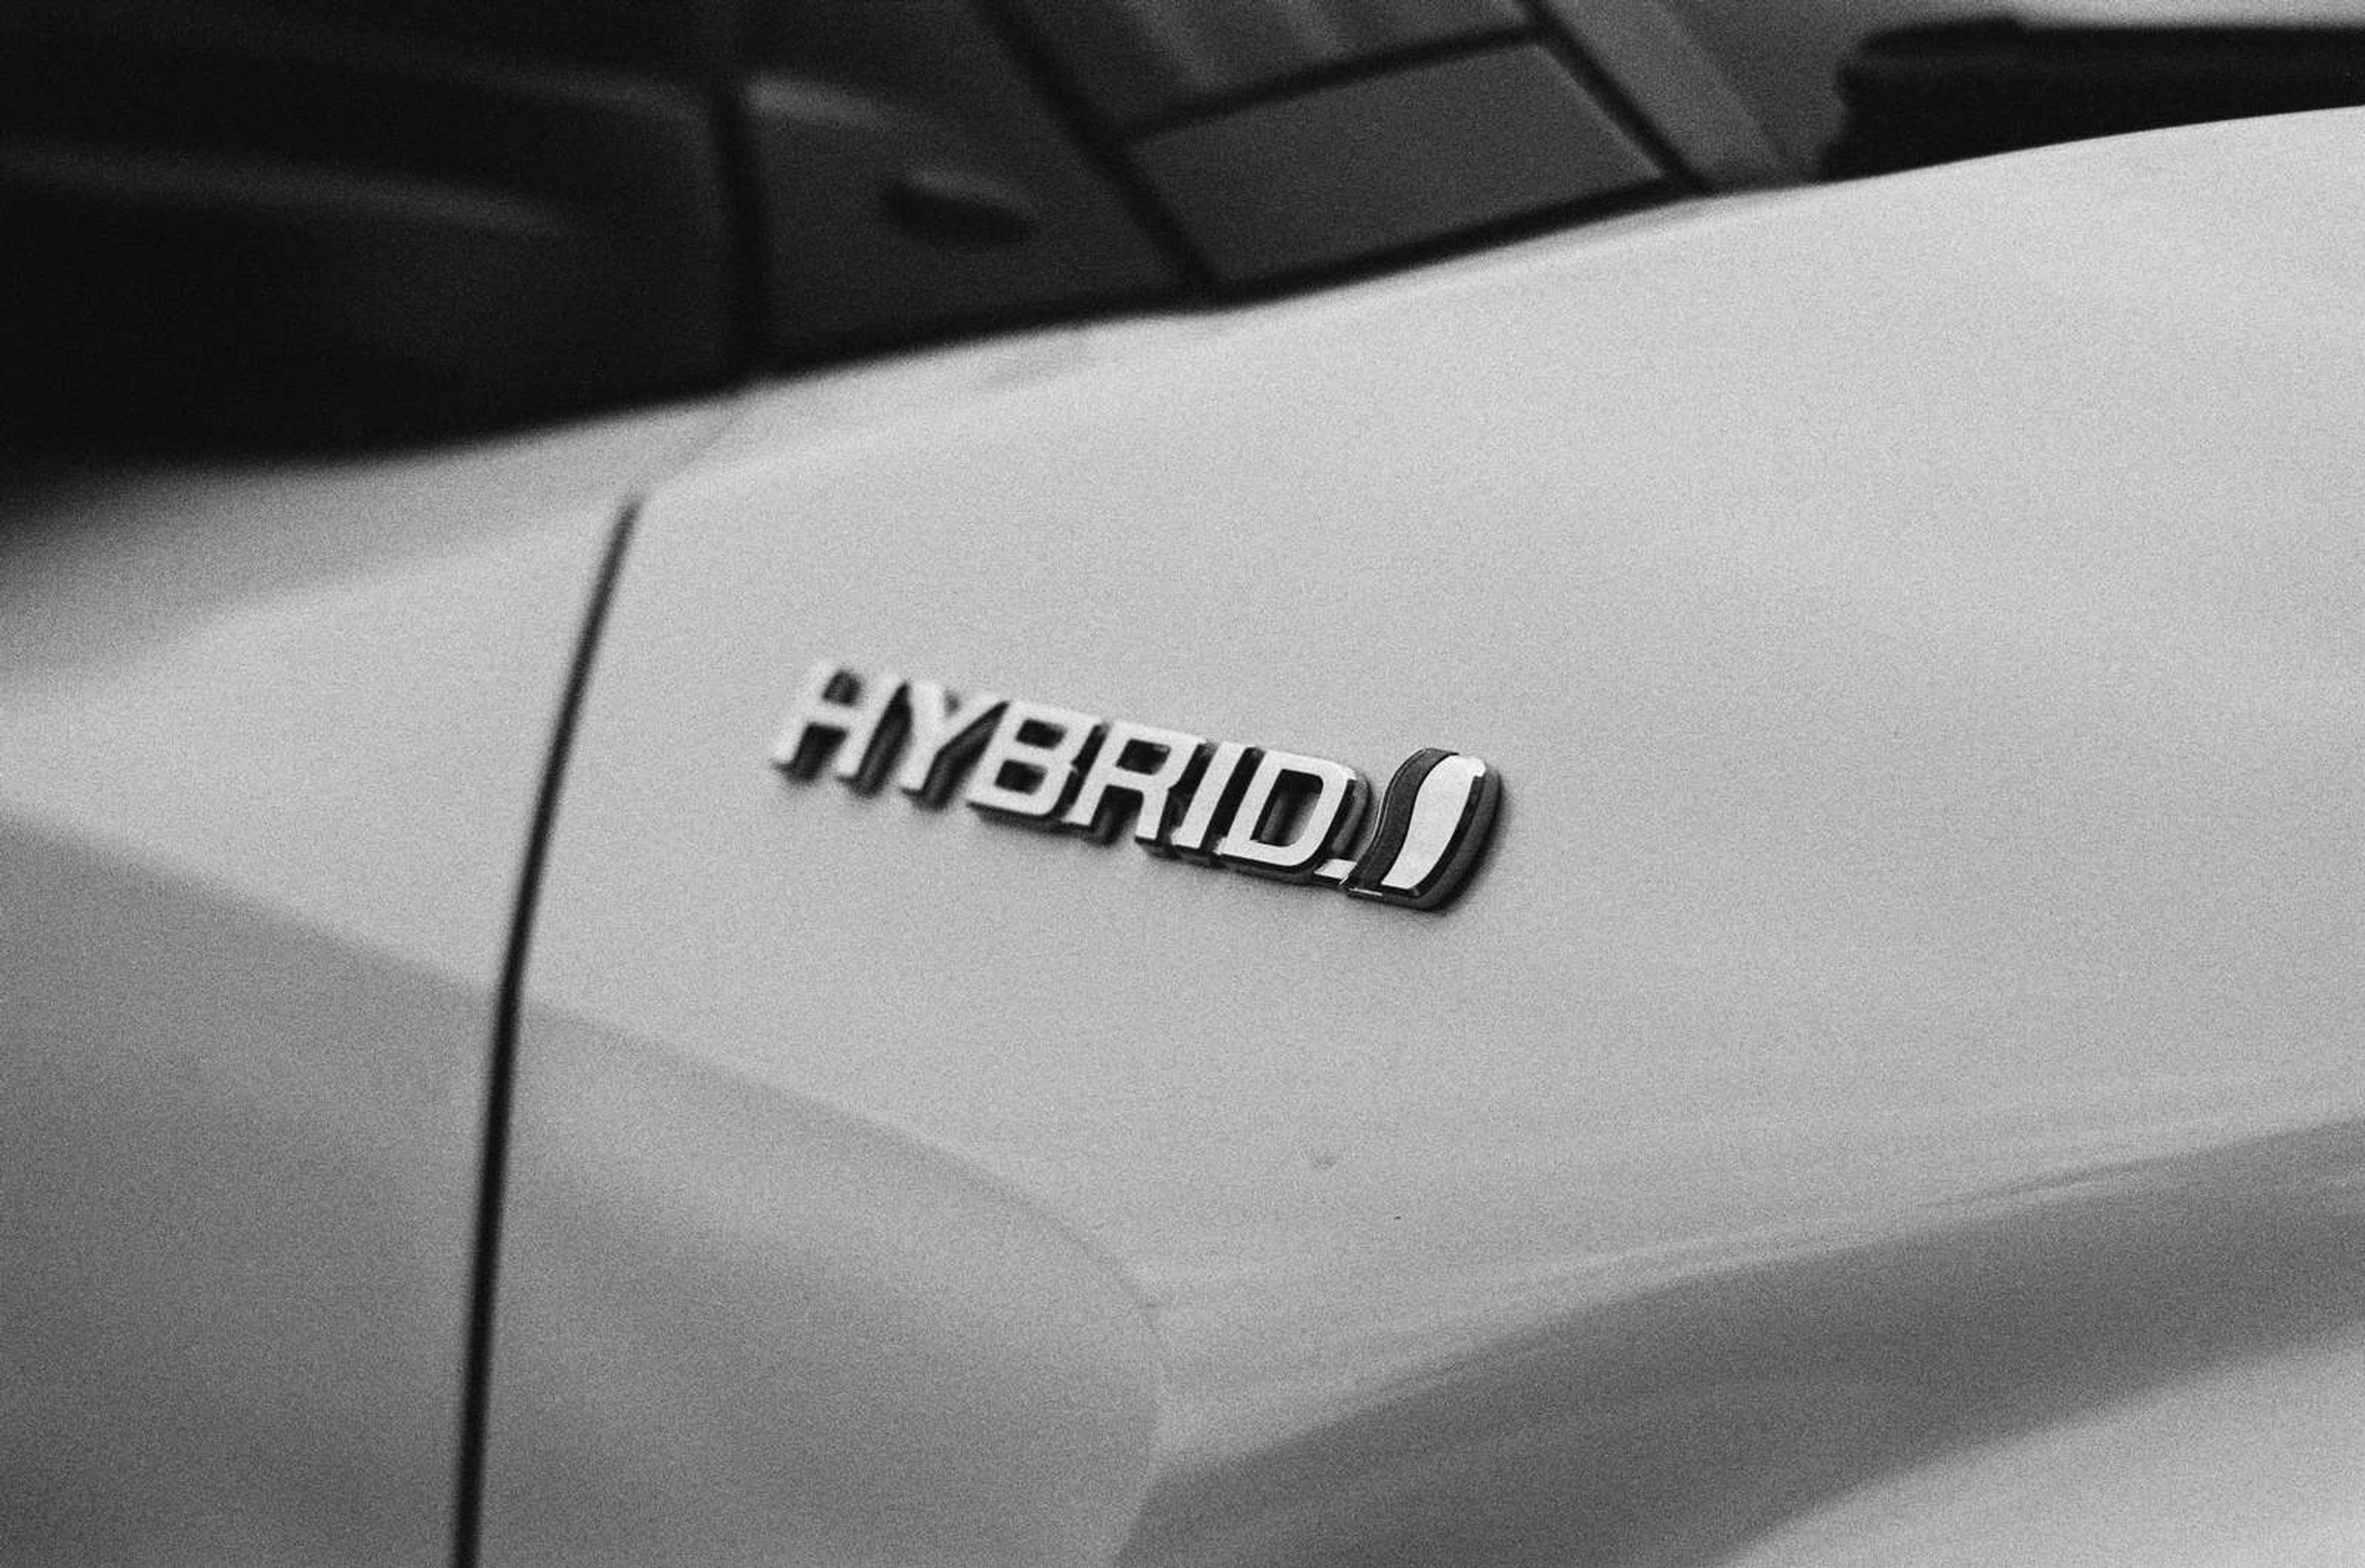 Značka hybridního vozu